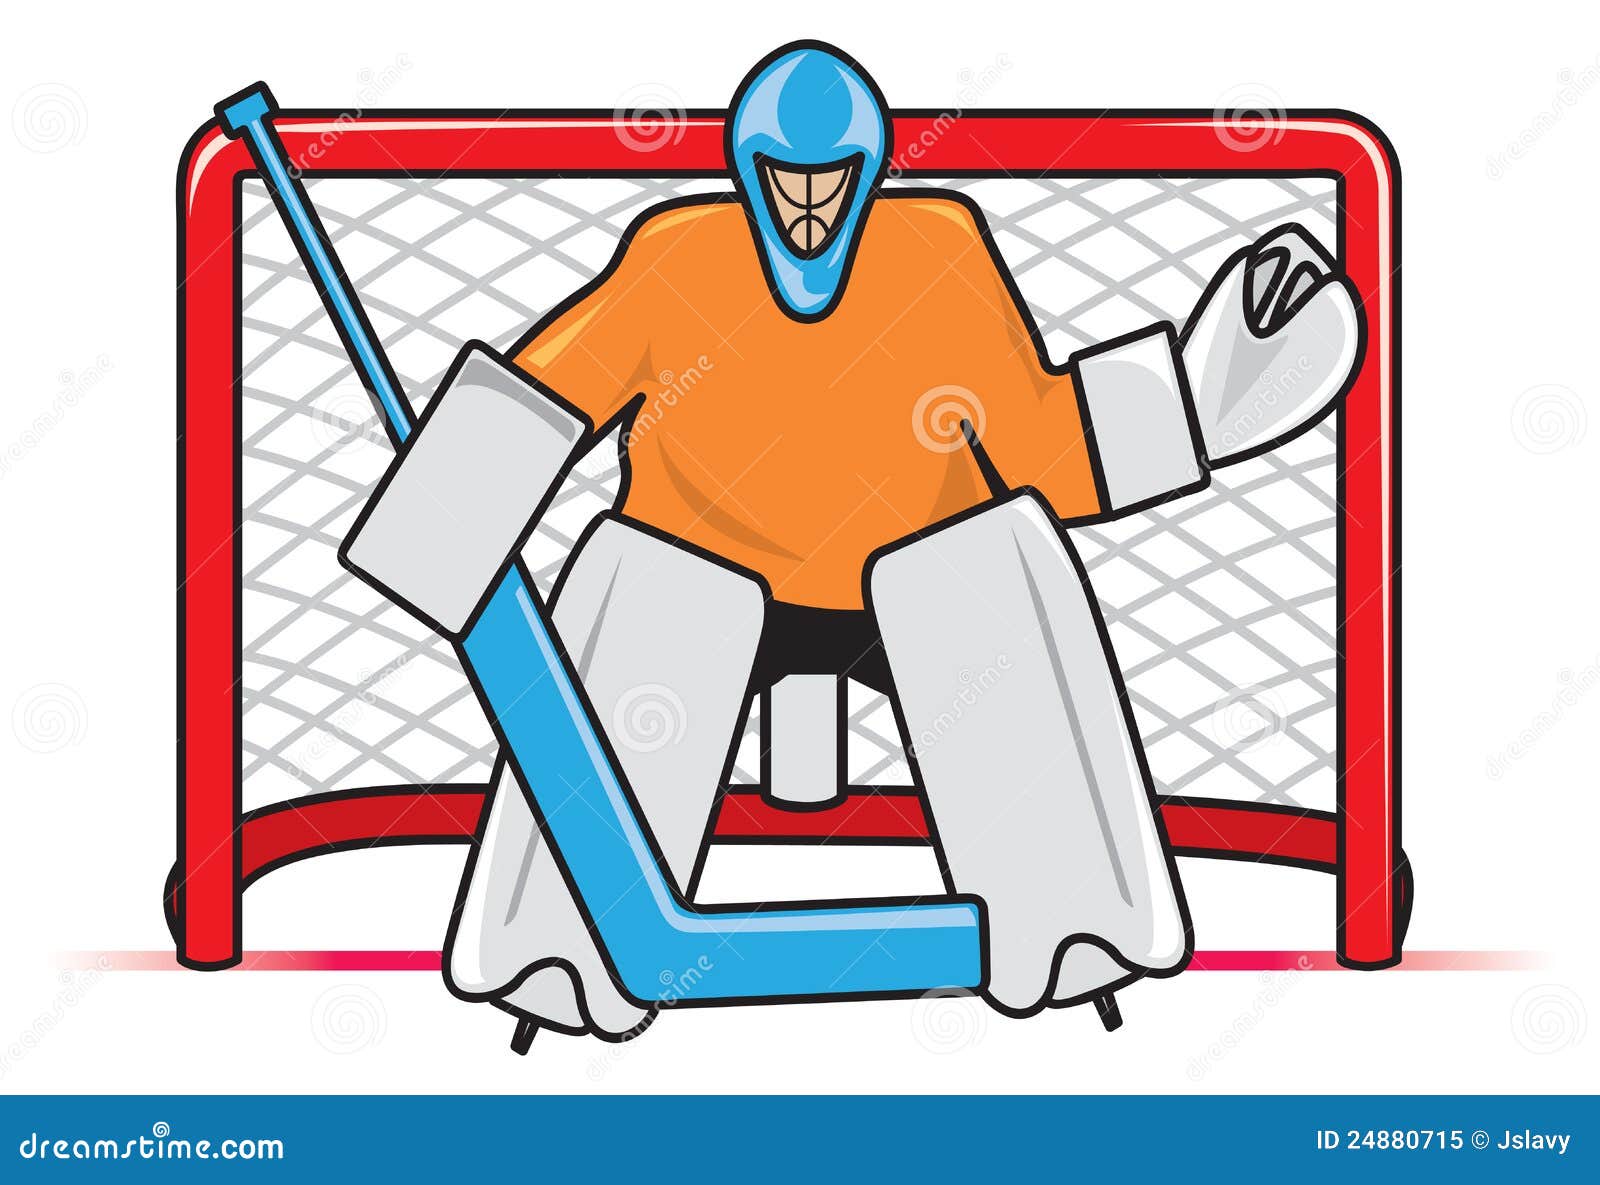 Hockey Goalie stock vector. Illustration of athlete, goal - 24880715